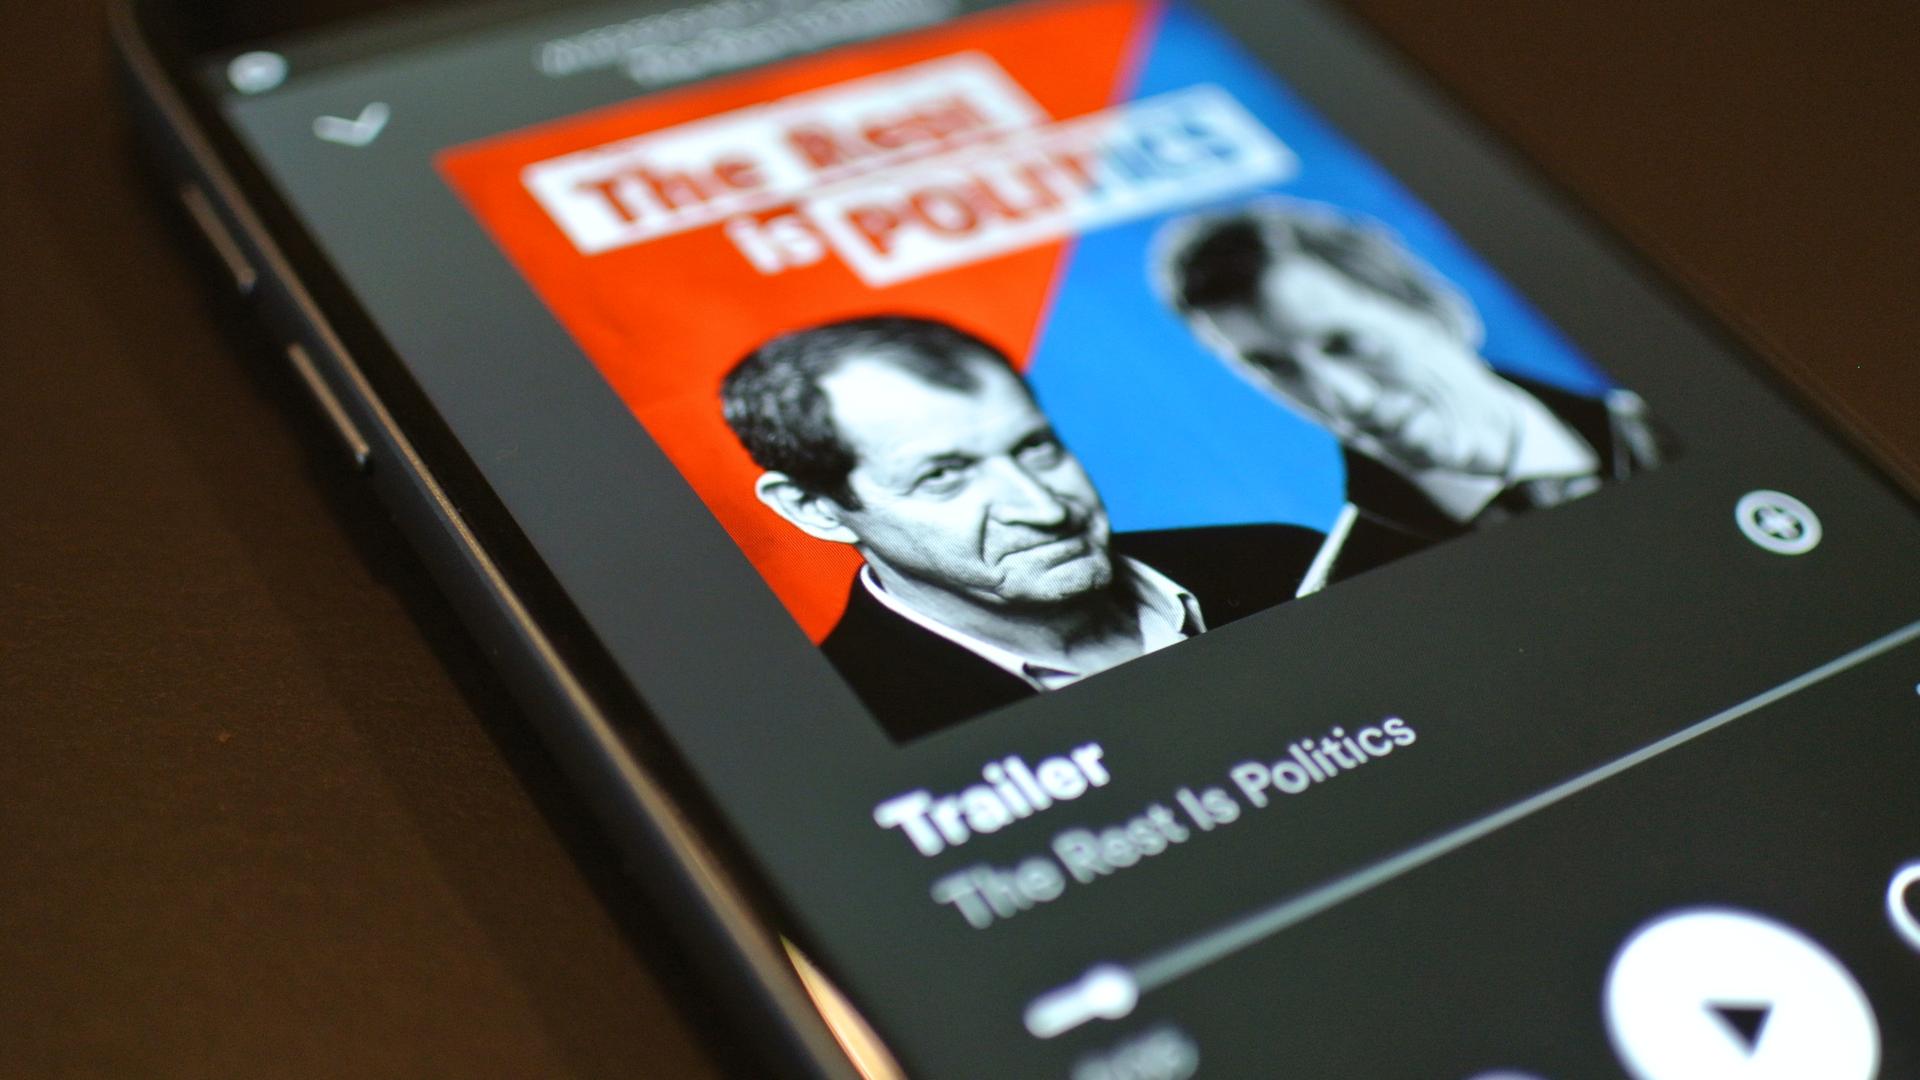 Das Profilbild des Podcasts "The rest is politics" in einem Smartphone